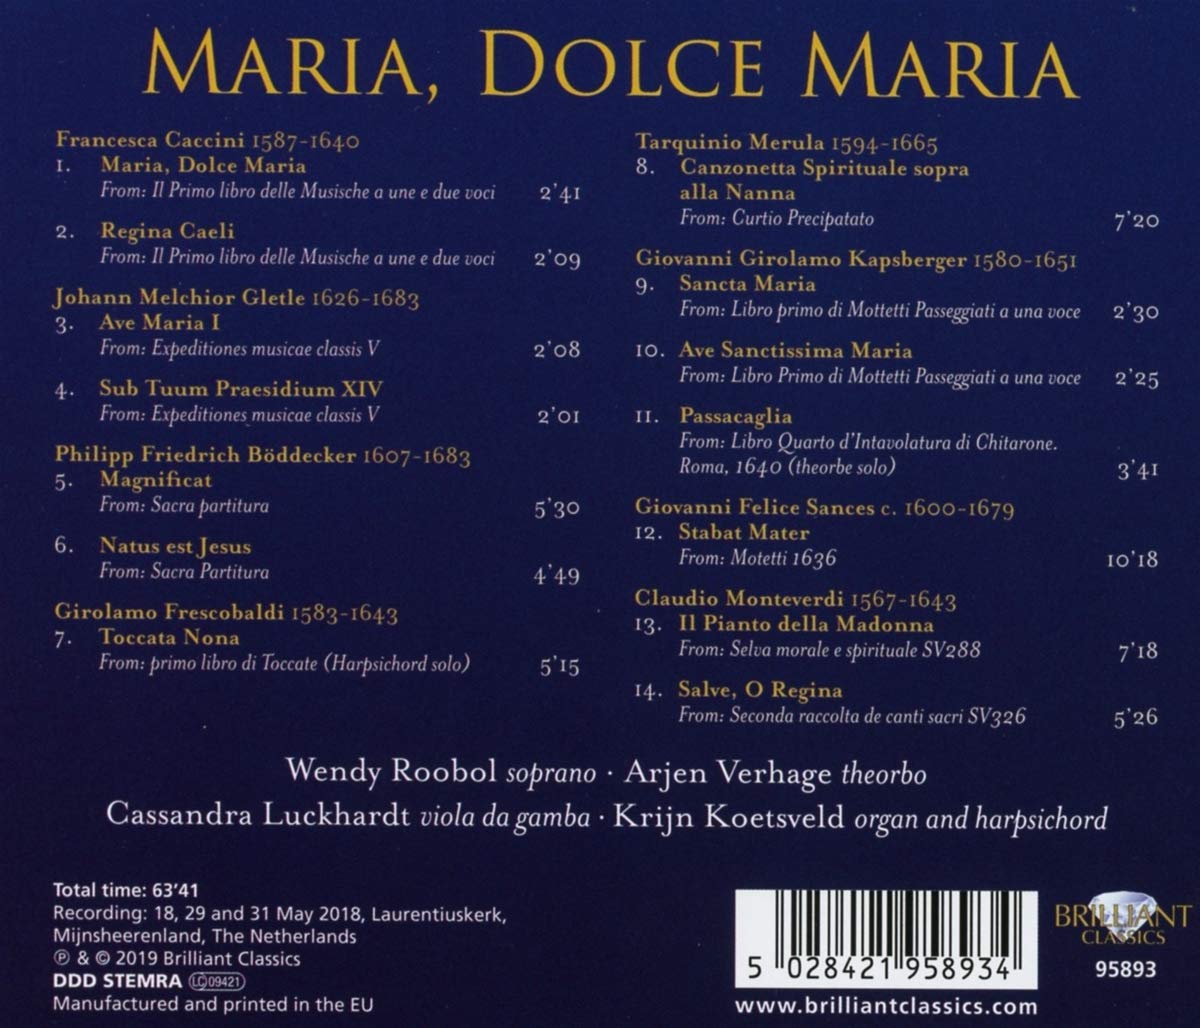 17세기 성모 마리아 노래 모음집 (Maria, Dolce Maria)